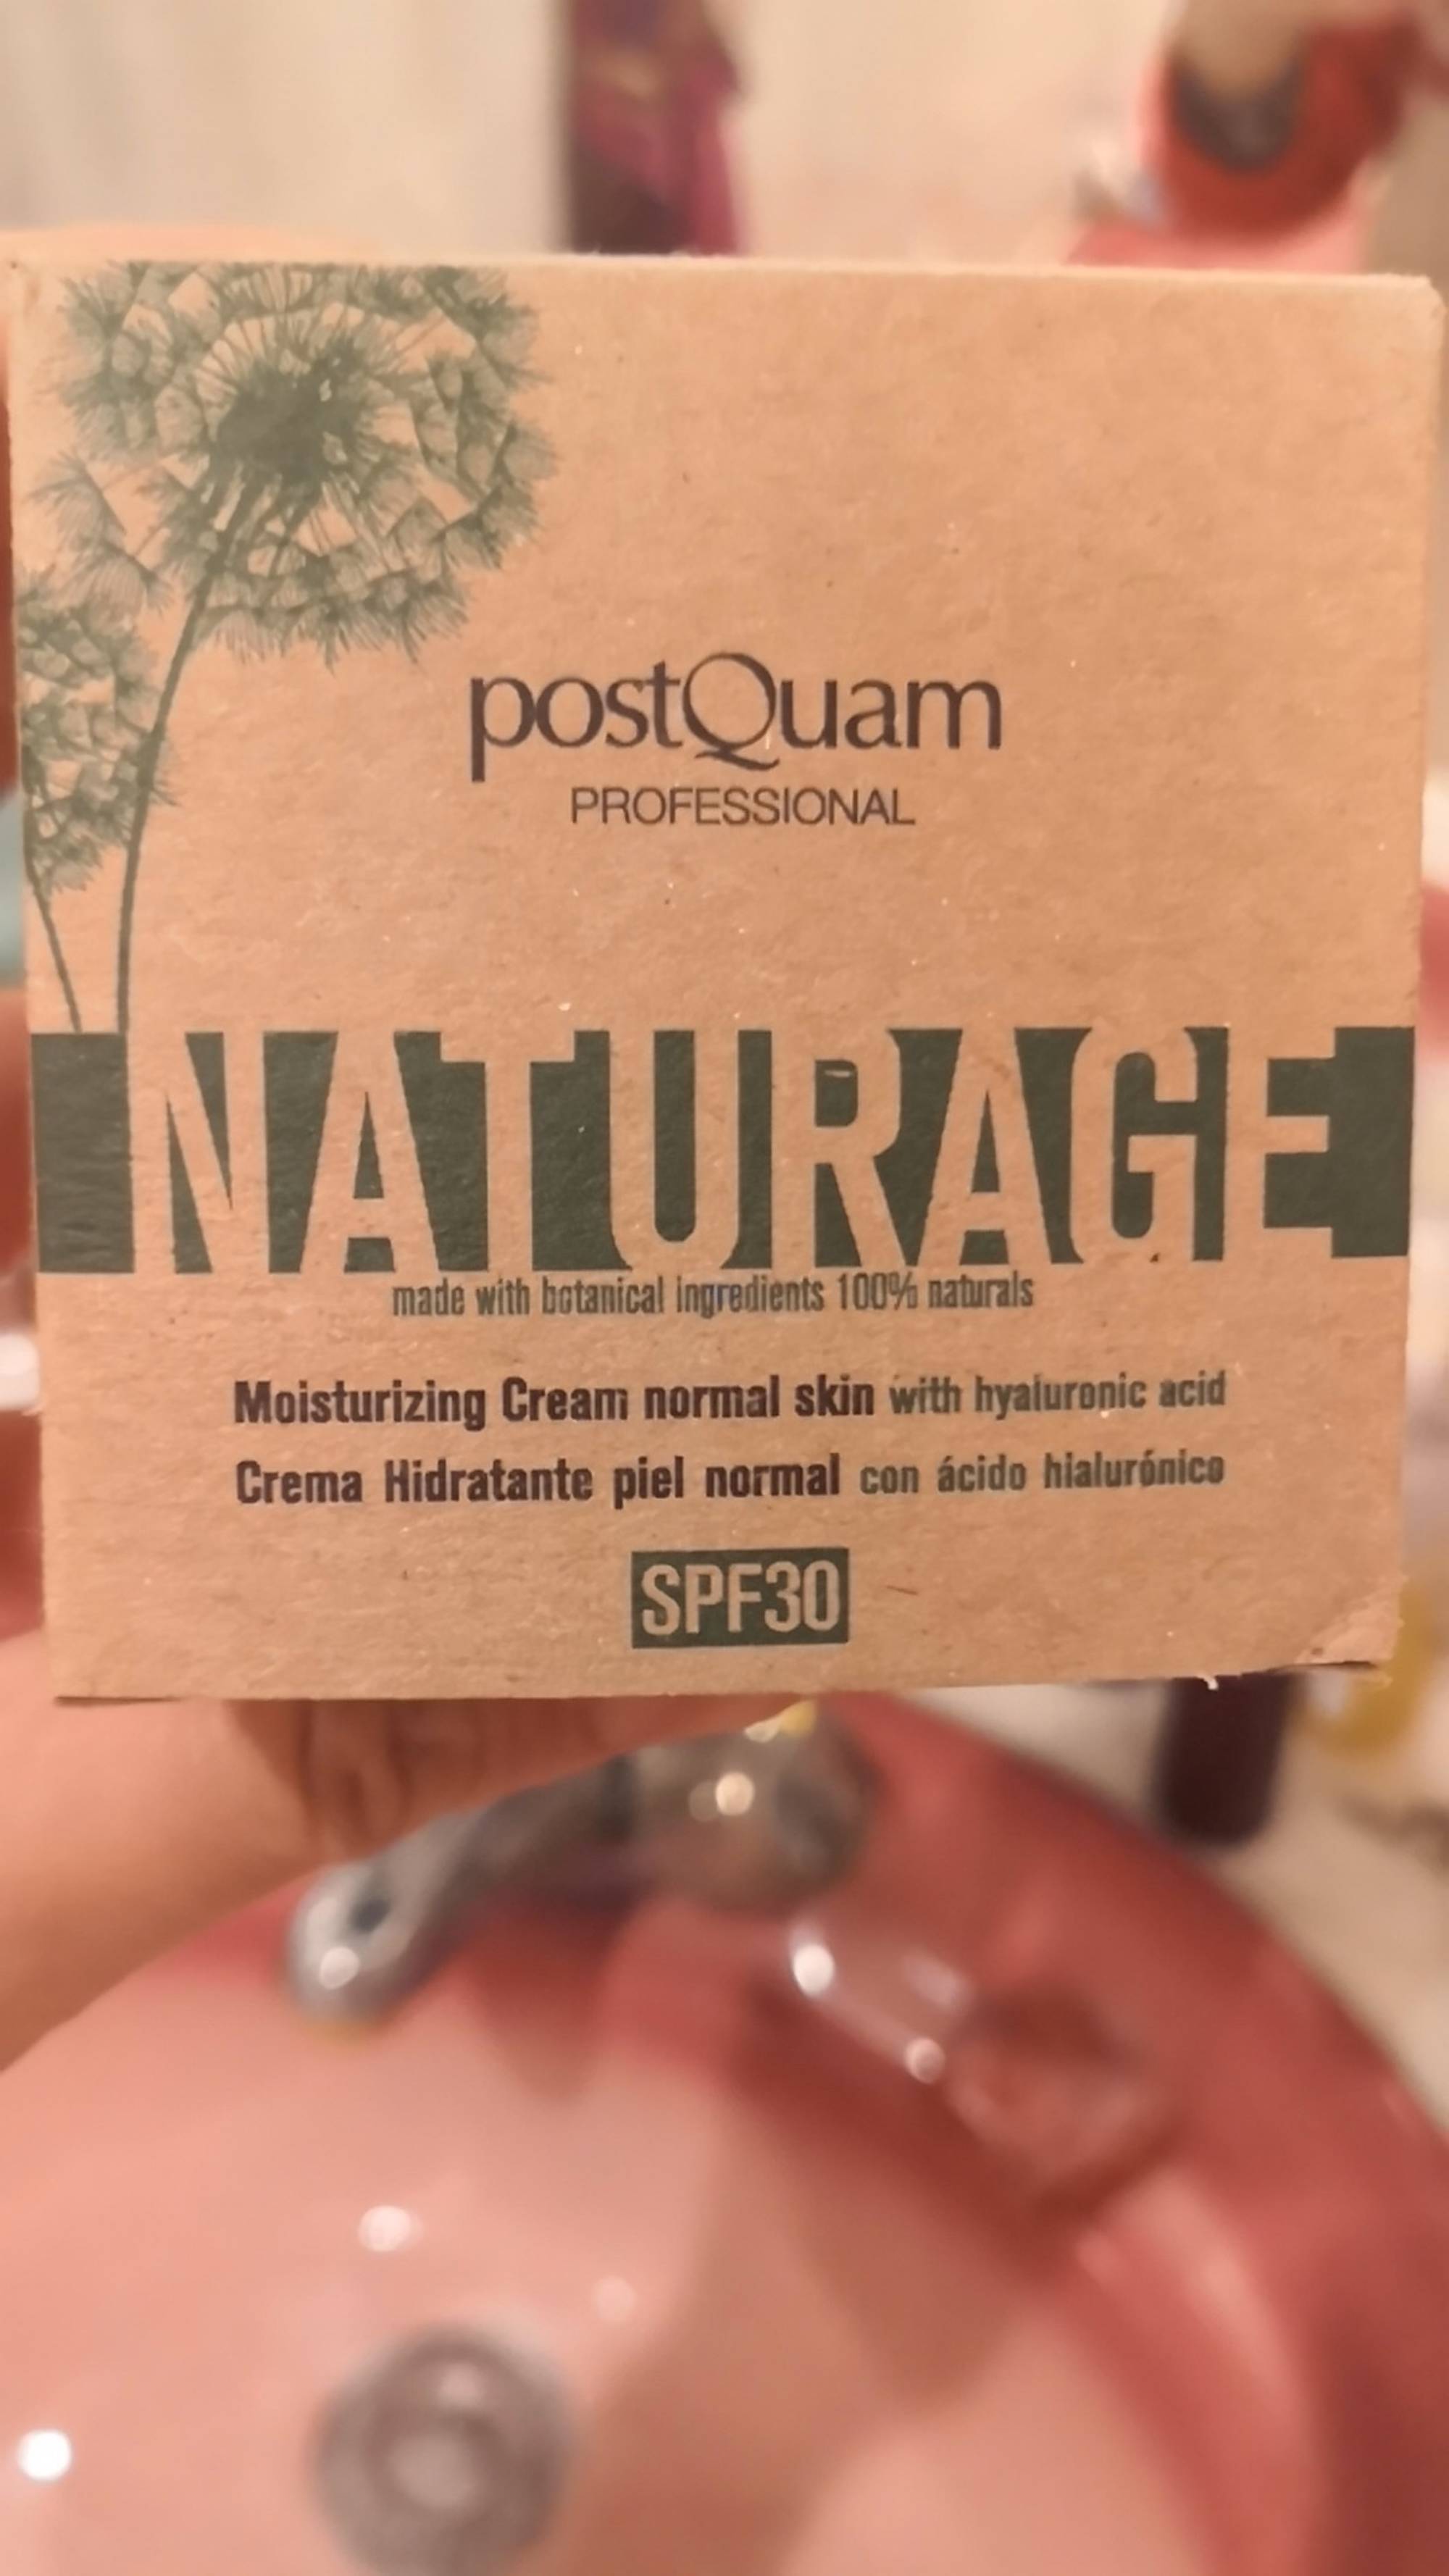 POSTQUAM - Naturage - Moisturizing cream normal skin